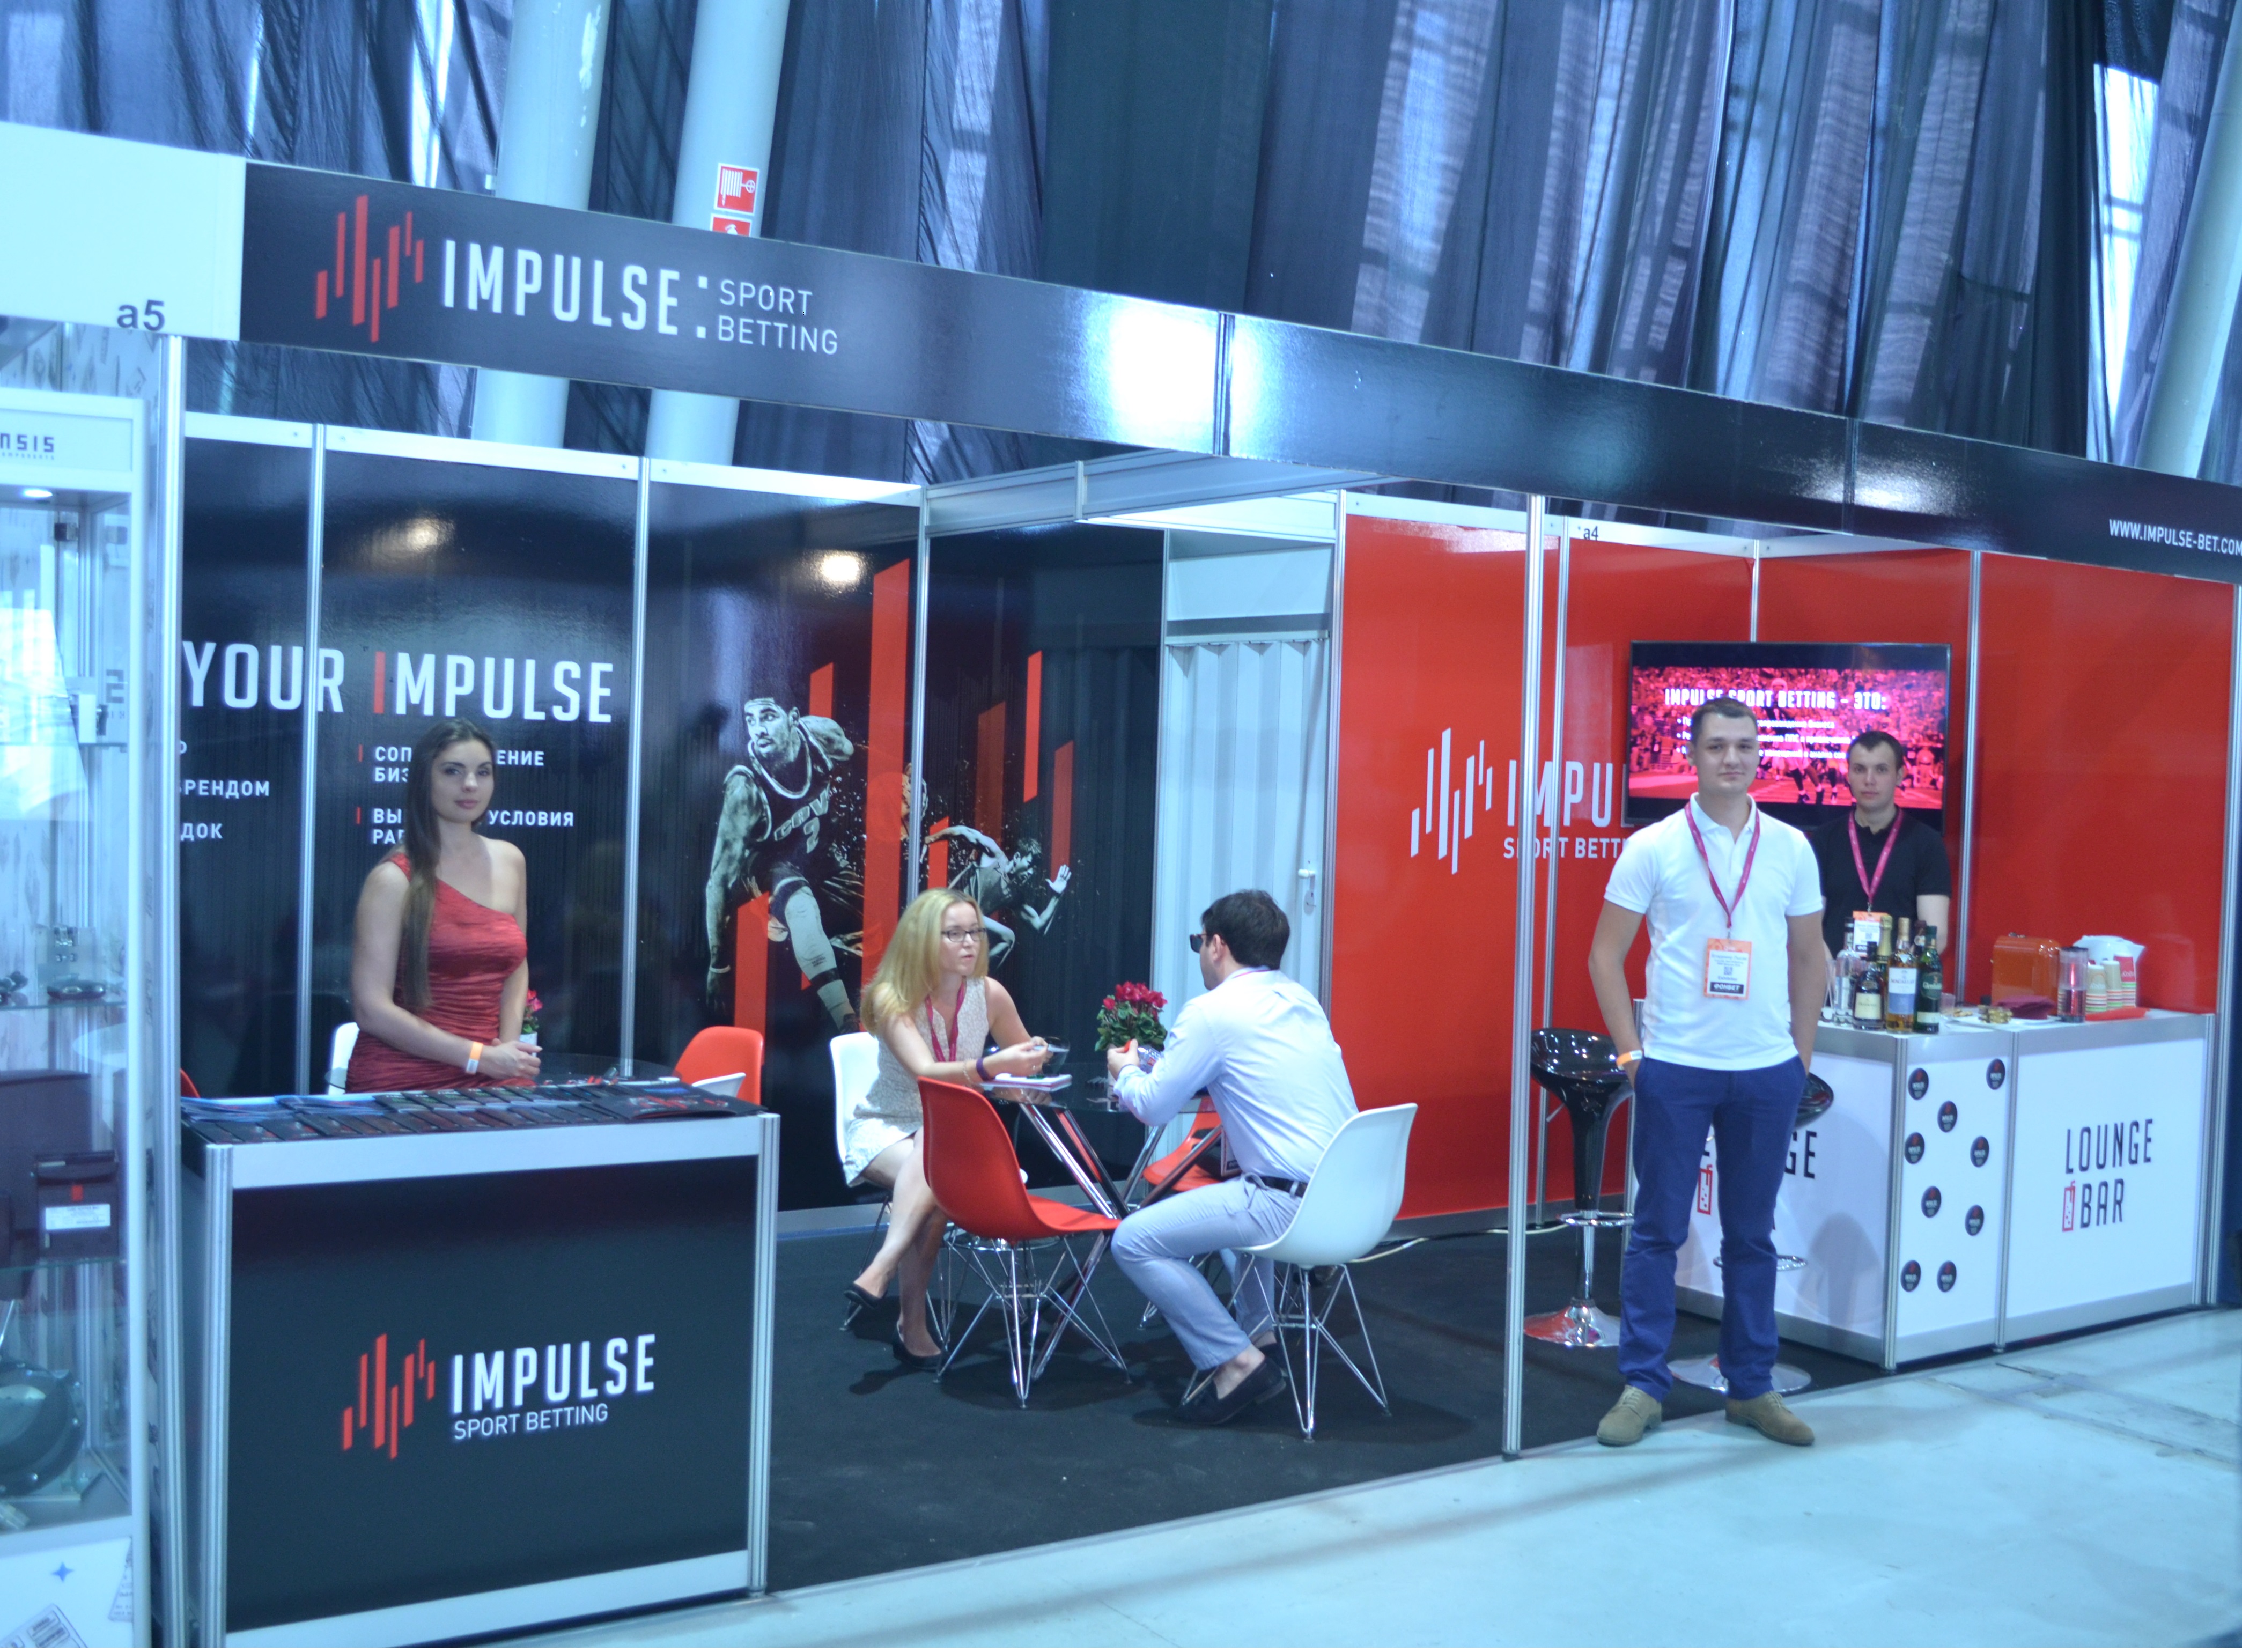 Выставка импульс новая. Бренд Impulse. Impulse2949. Импульс бренд фото. "Impulse (Qingdao) Health Tech co., Ltd.".